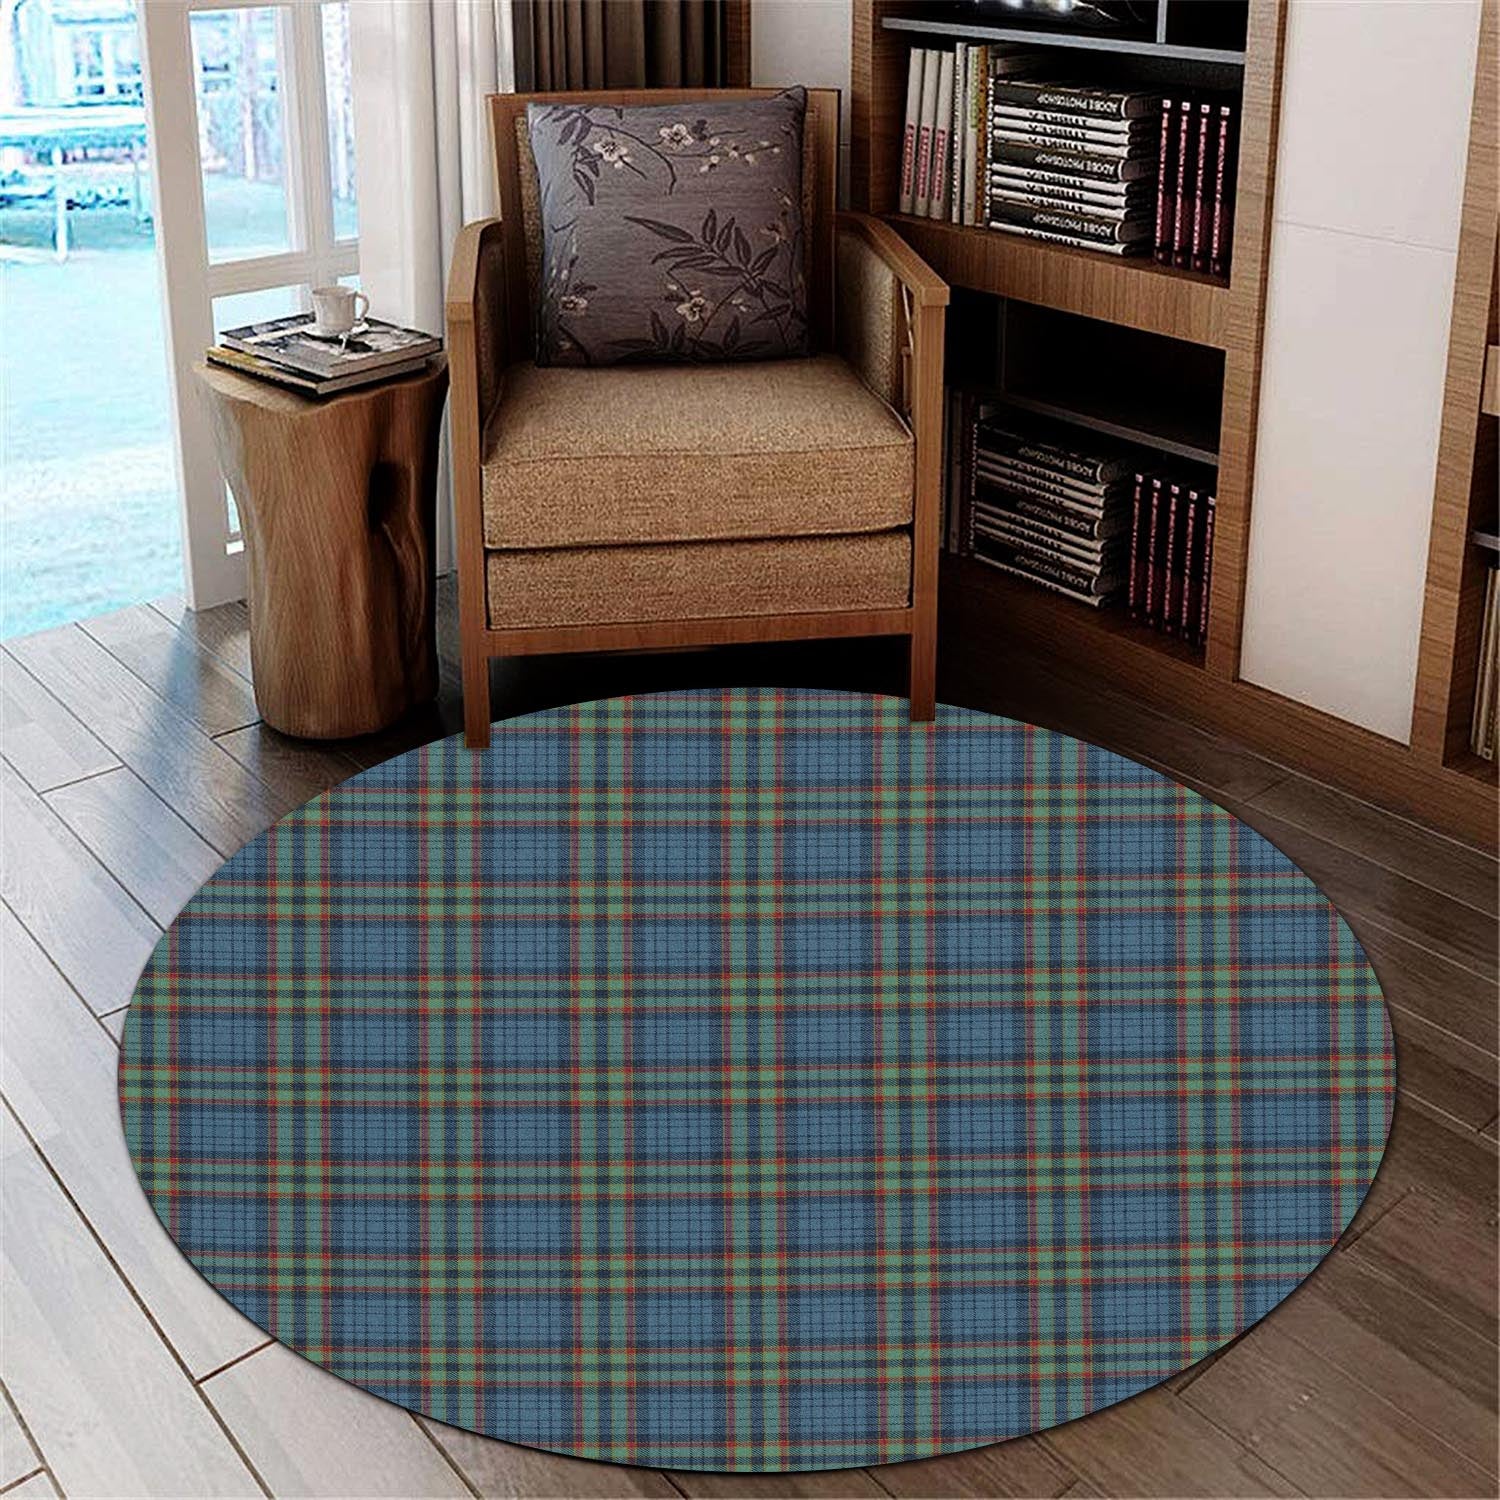 ralston-uk-tartan-round-rug